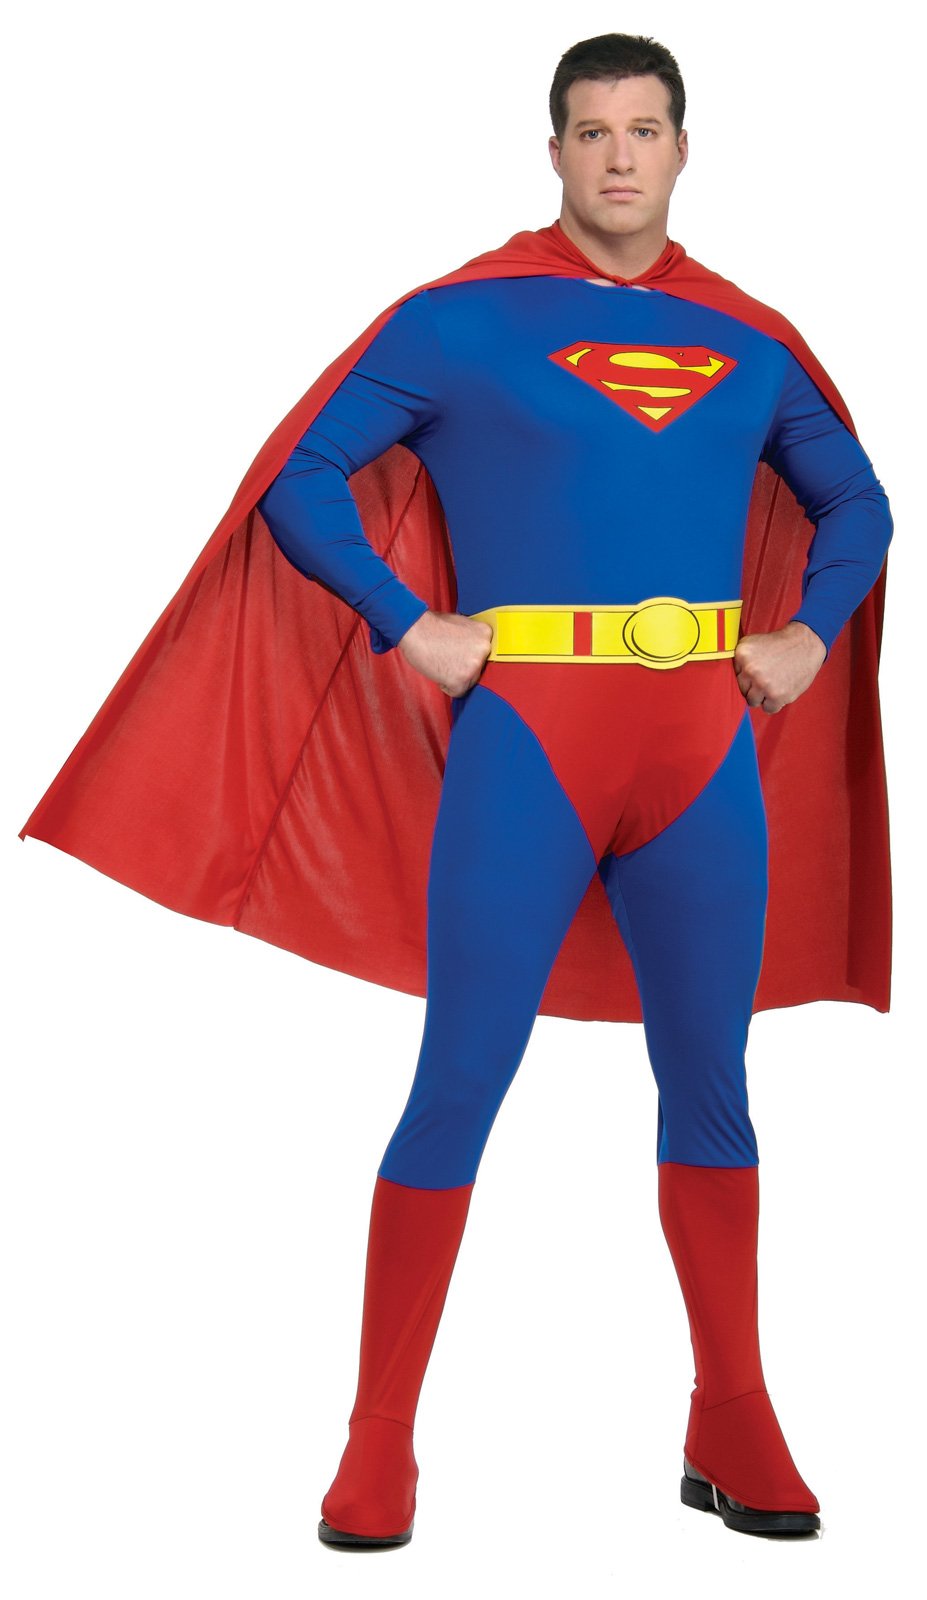 Superman Adult Plus Costume